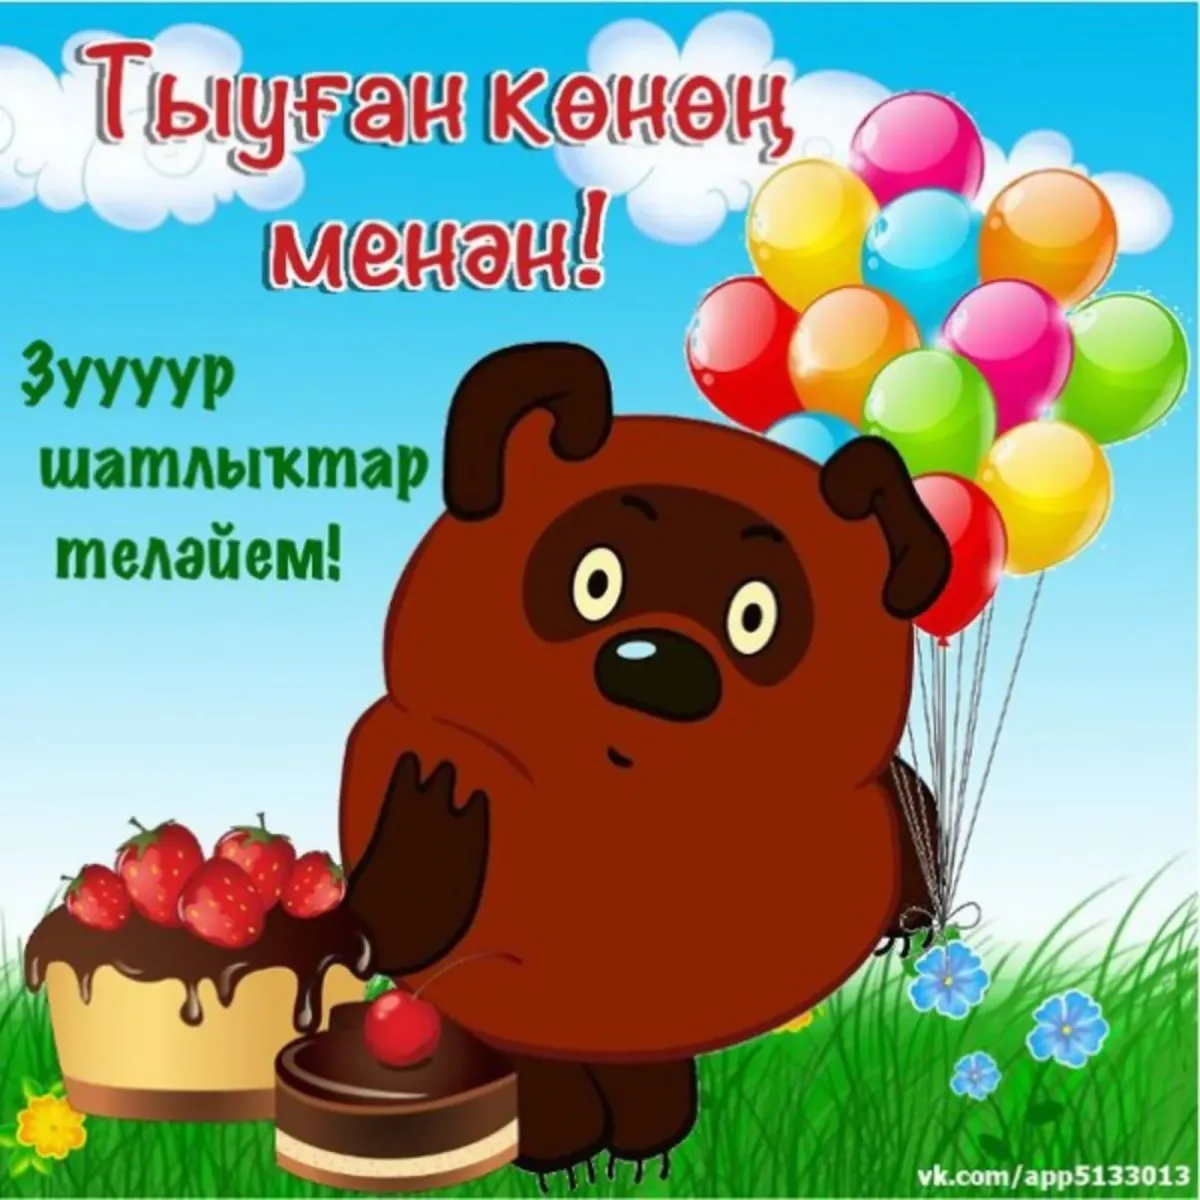 Поздравление сестре на башкирском языке. Поздравления с днём рождения на башкирском языке. Башкирские пожелания на день рождения. Поздравления с днём рождения мужчине на башкирском языке. Поздравление с юбилеем на башкирском языке.